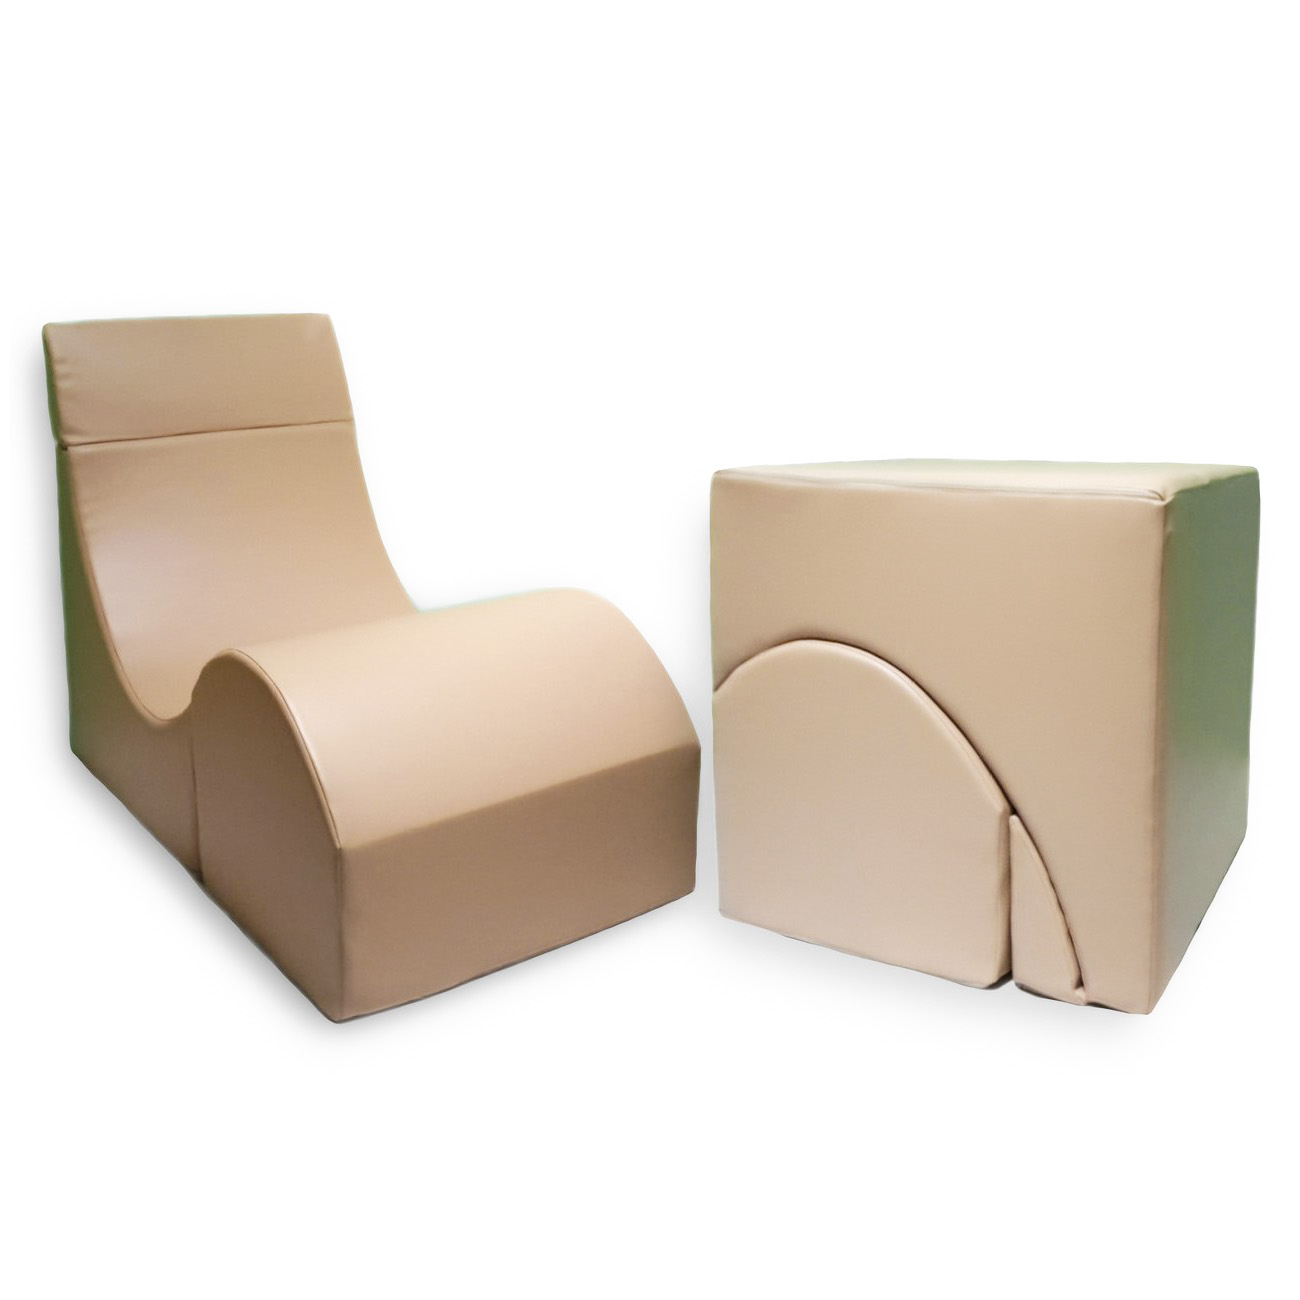 Терапевтическое кресло-кубик иа26108